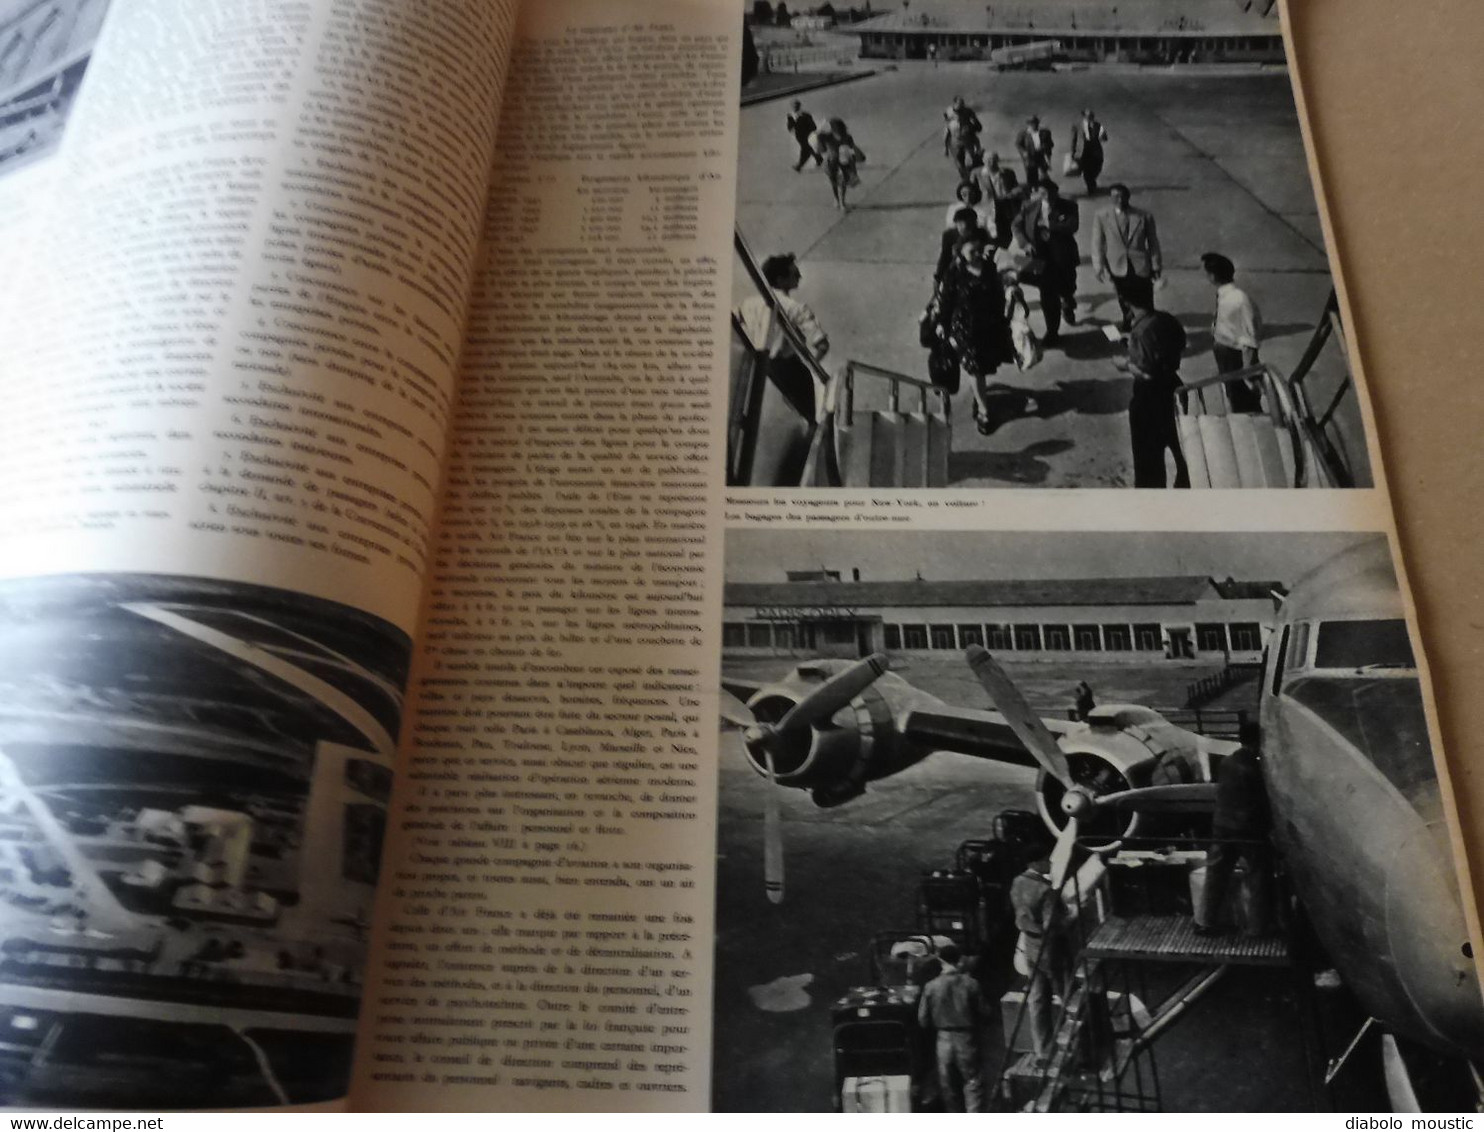 1948 INTER AVIA  (Interavia) - Revue d'Aéronautique Mondiale : Northrop YB-49, Les stewardesses, Manana por manana ;Etc